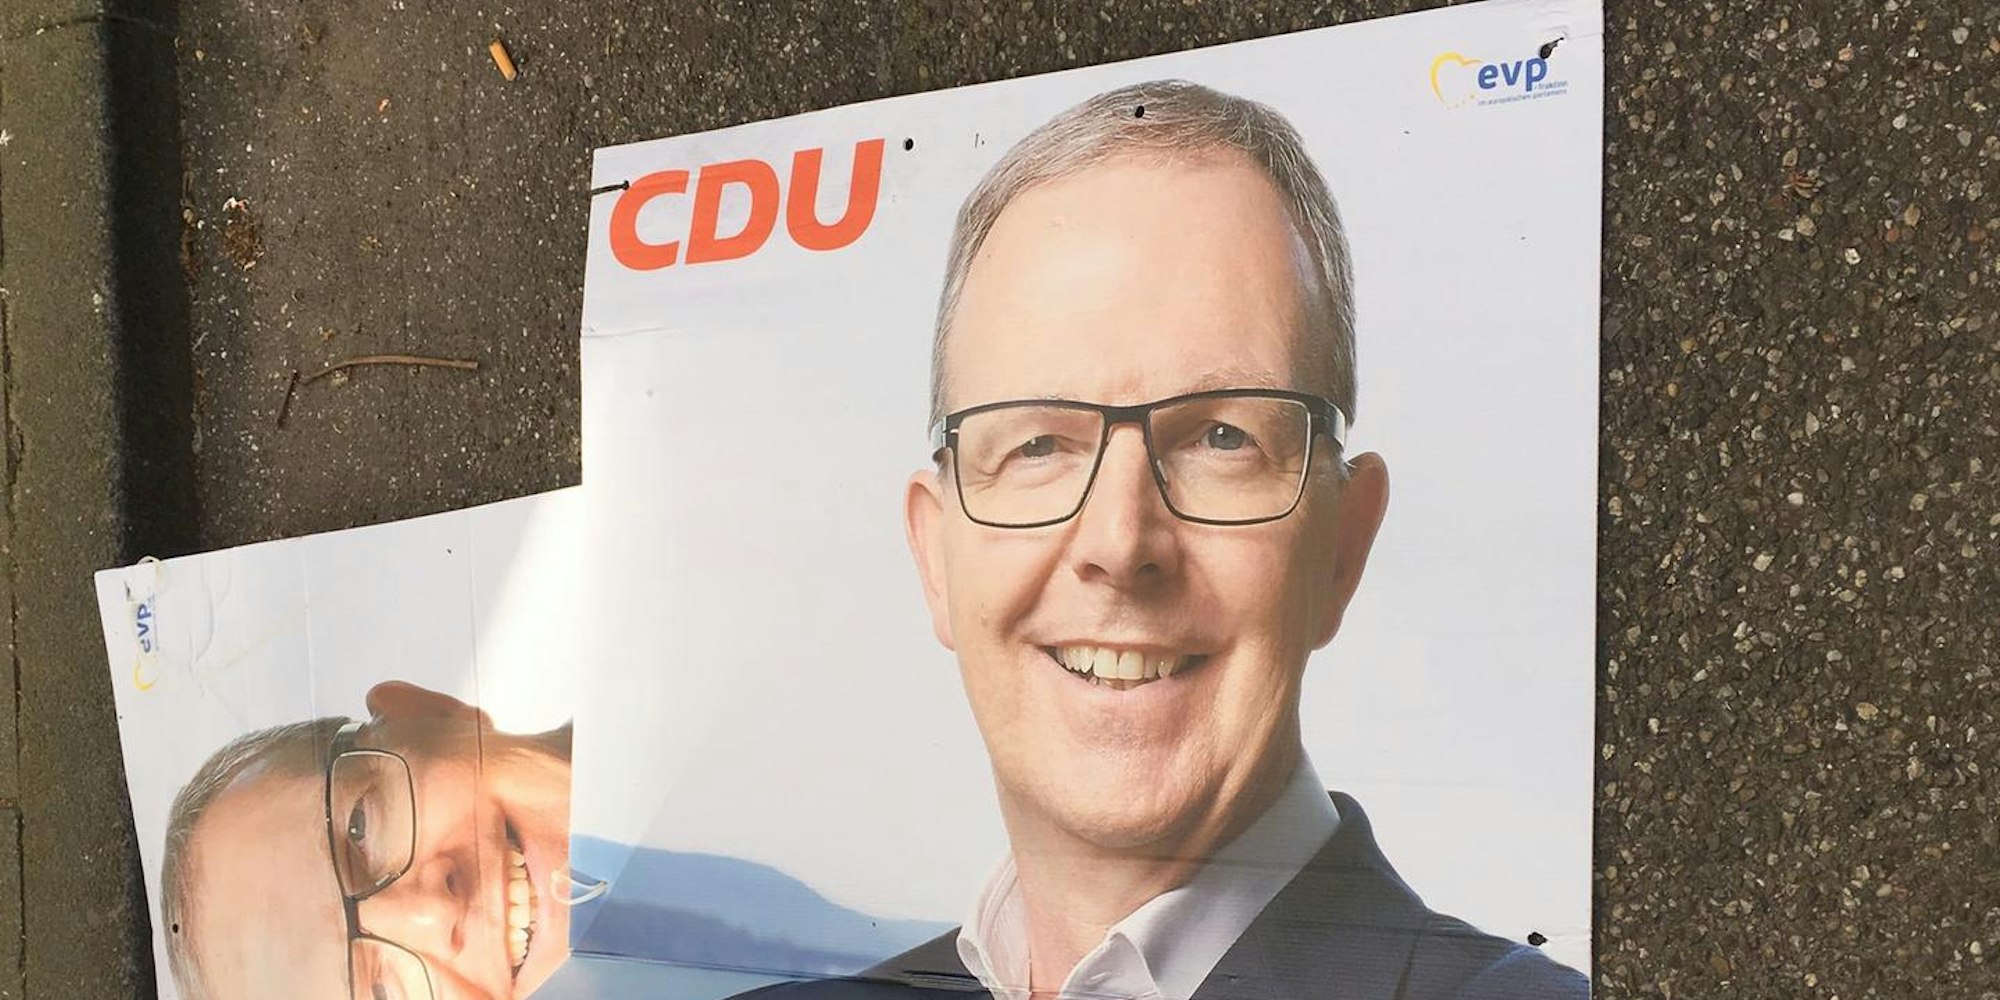 CDU Plakat abgerissen